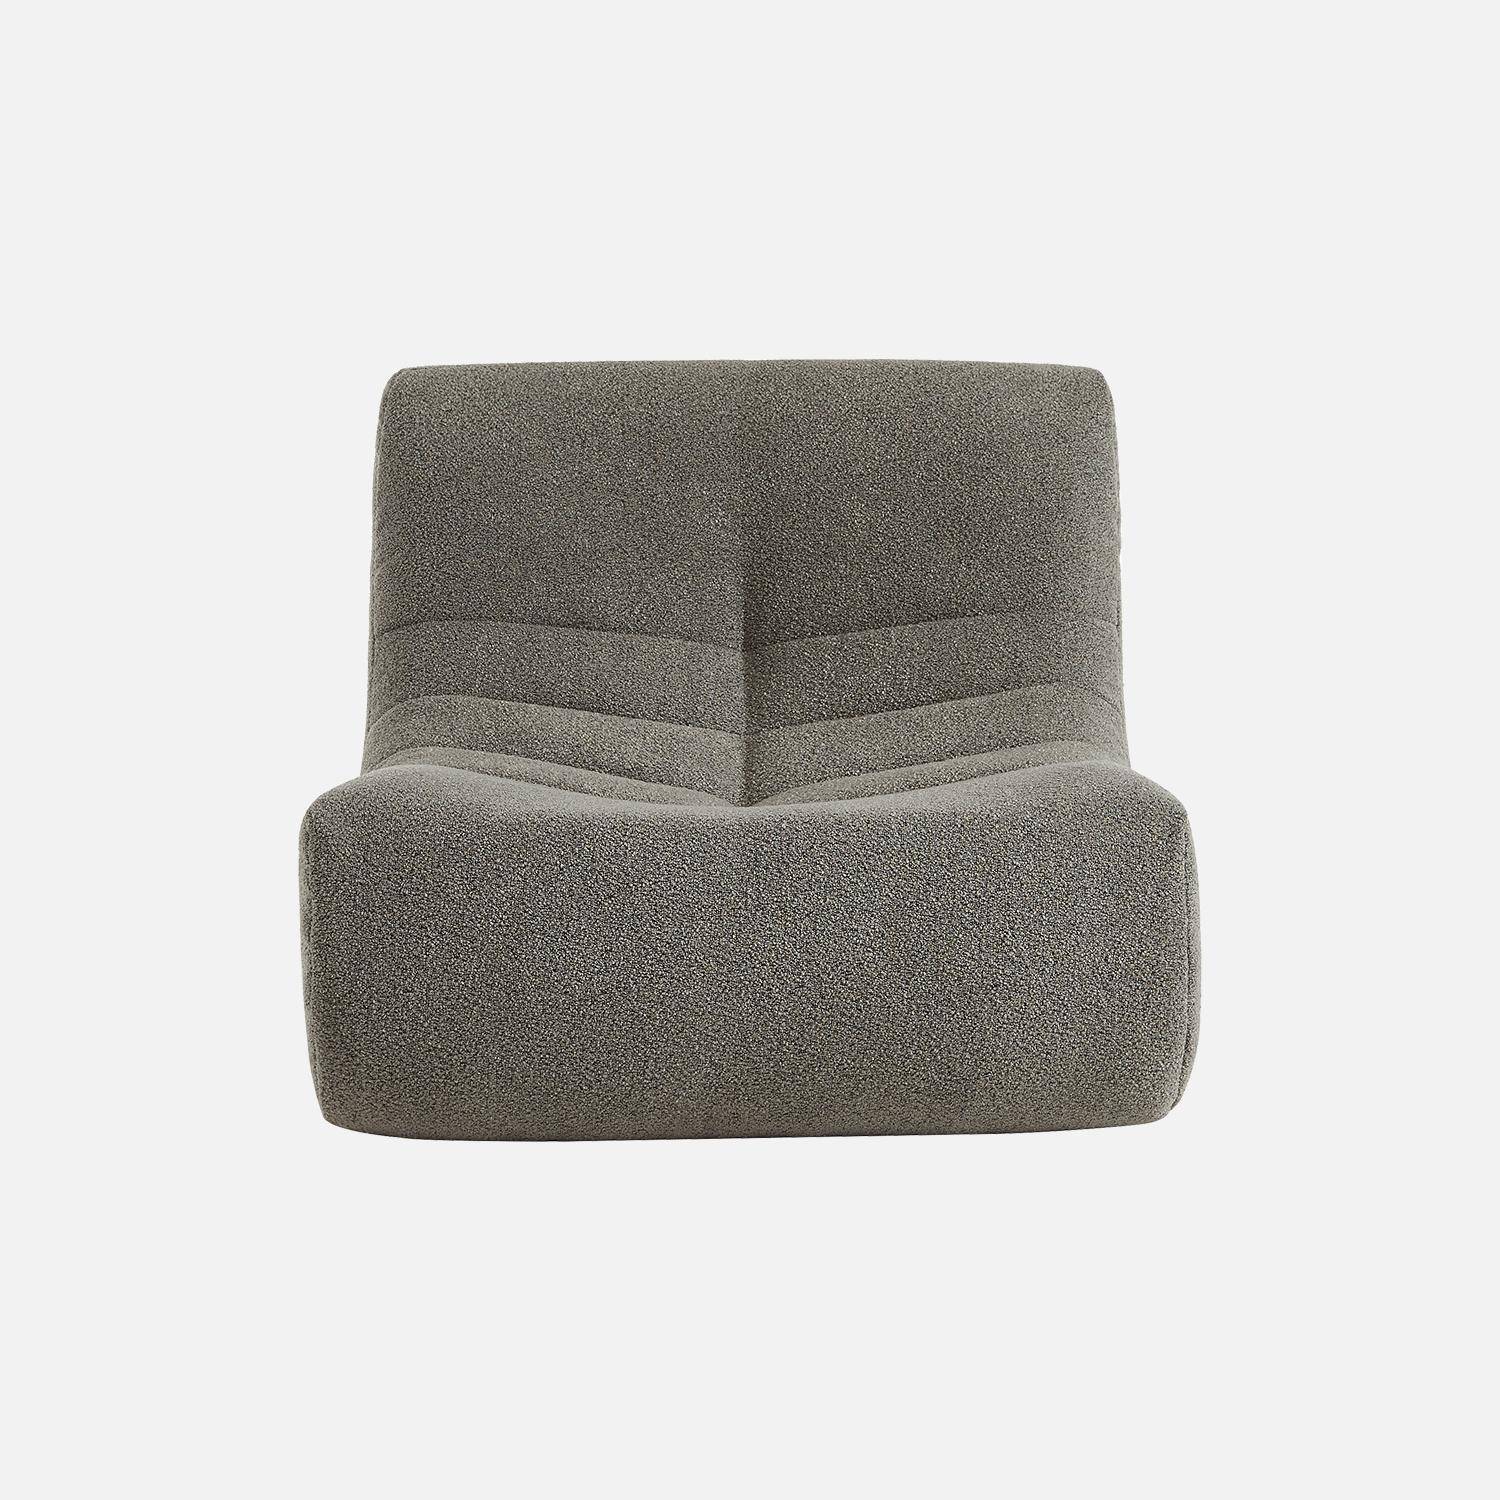 Fauteuil in grijze boucléstof, eigentijdse stijl, 1 zitplaats,sweeek,Photo4